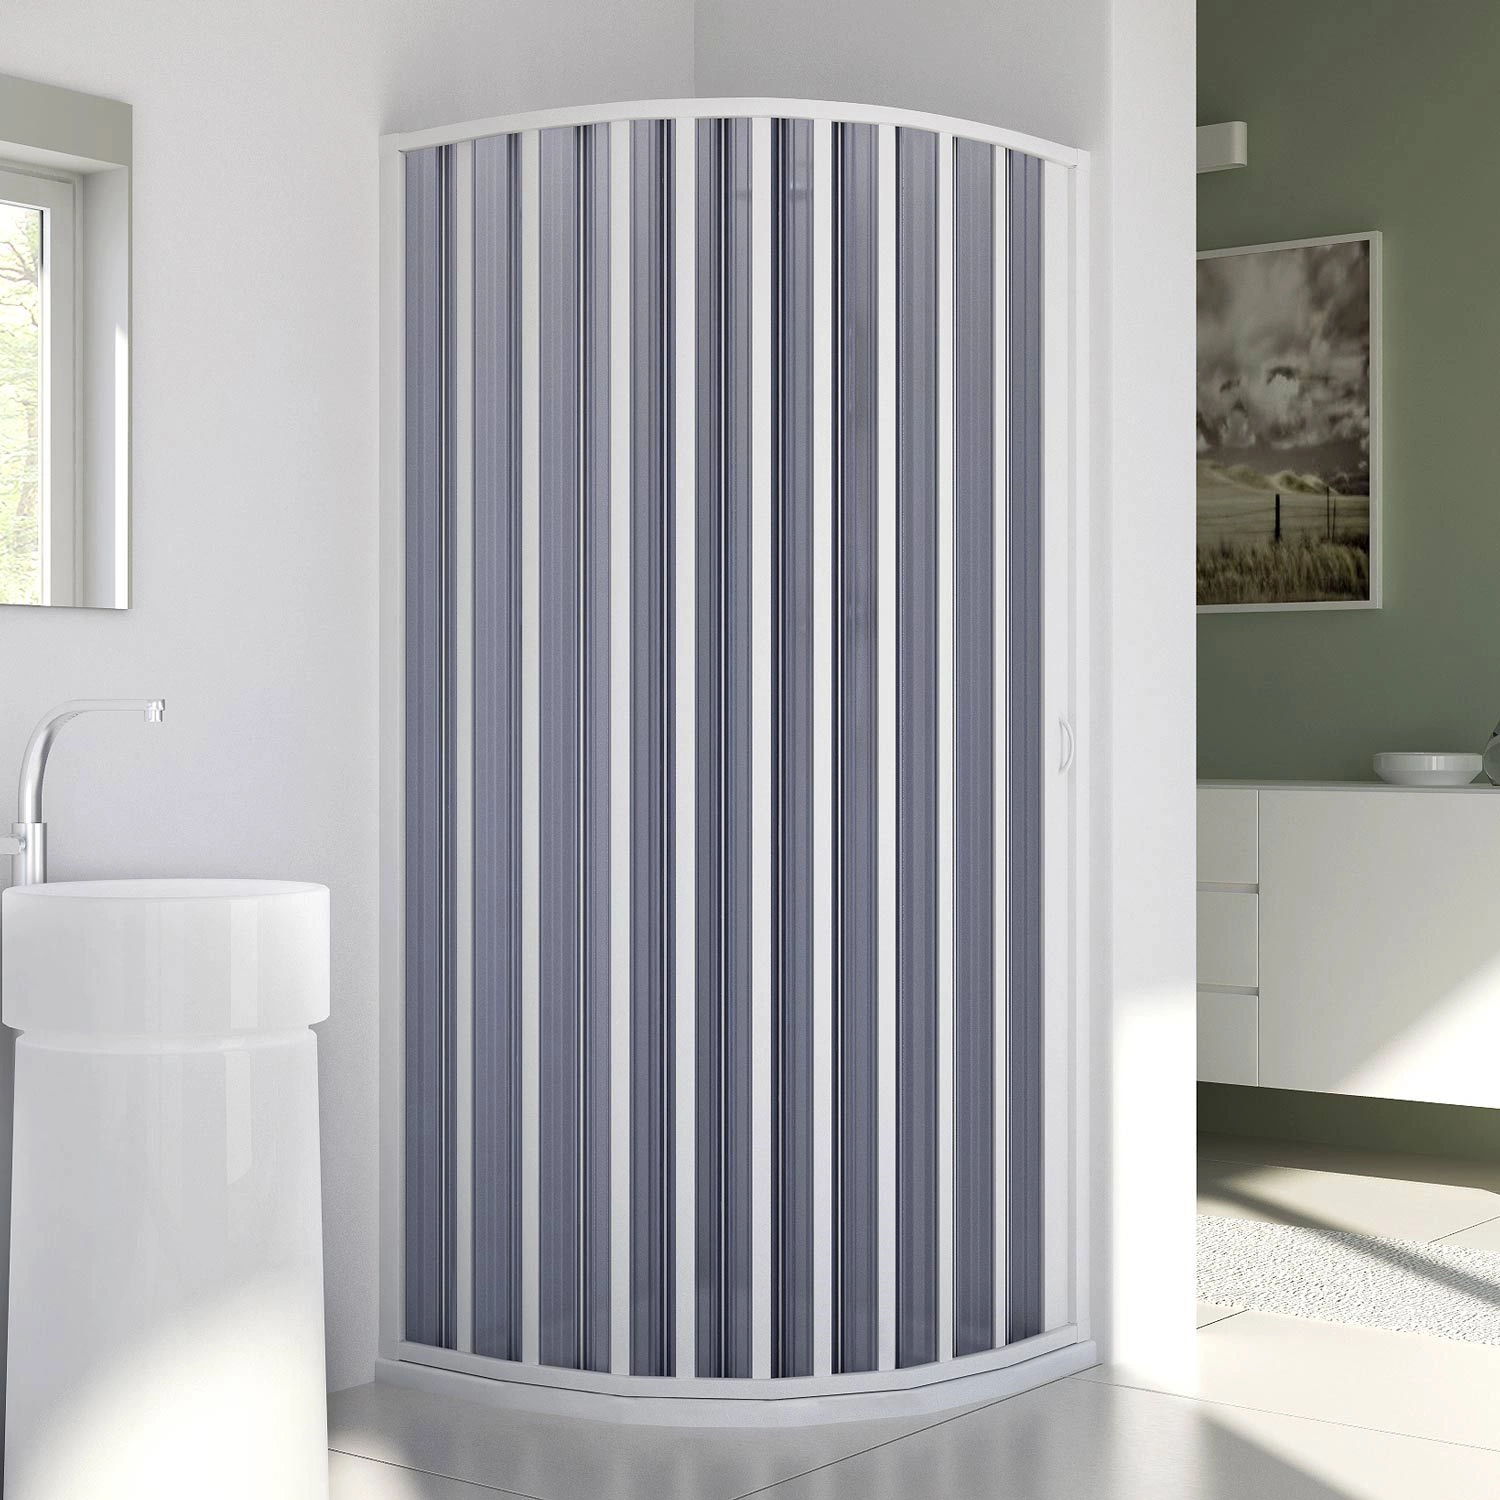 Mampara de ducha de baño para nichos de entre 160 y 170 cm fabricada en PVC